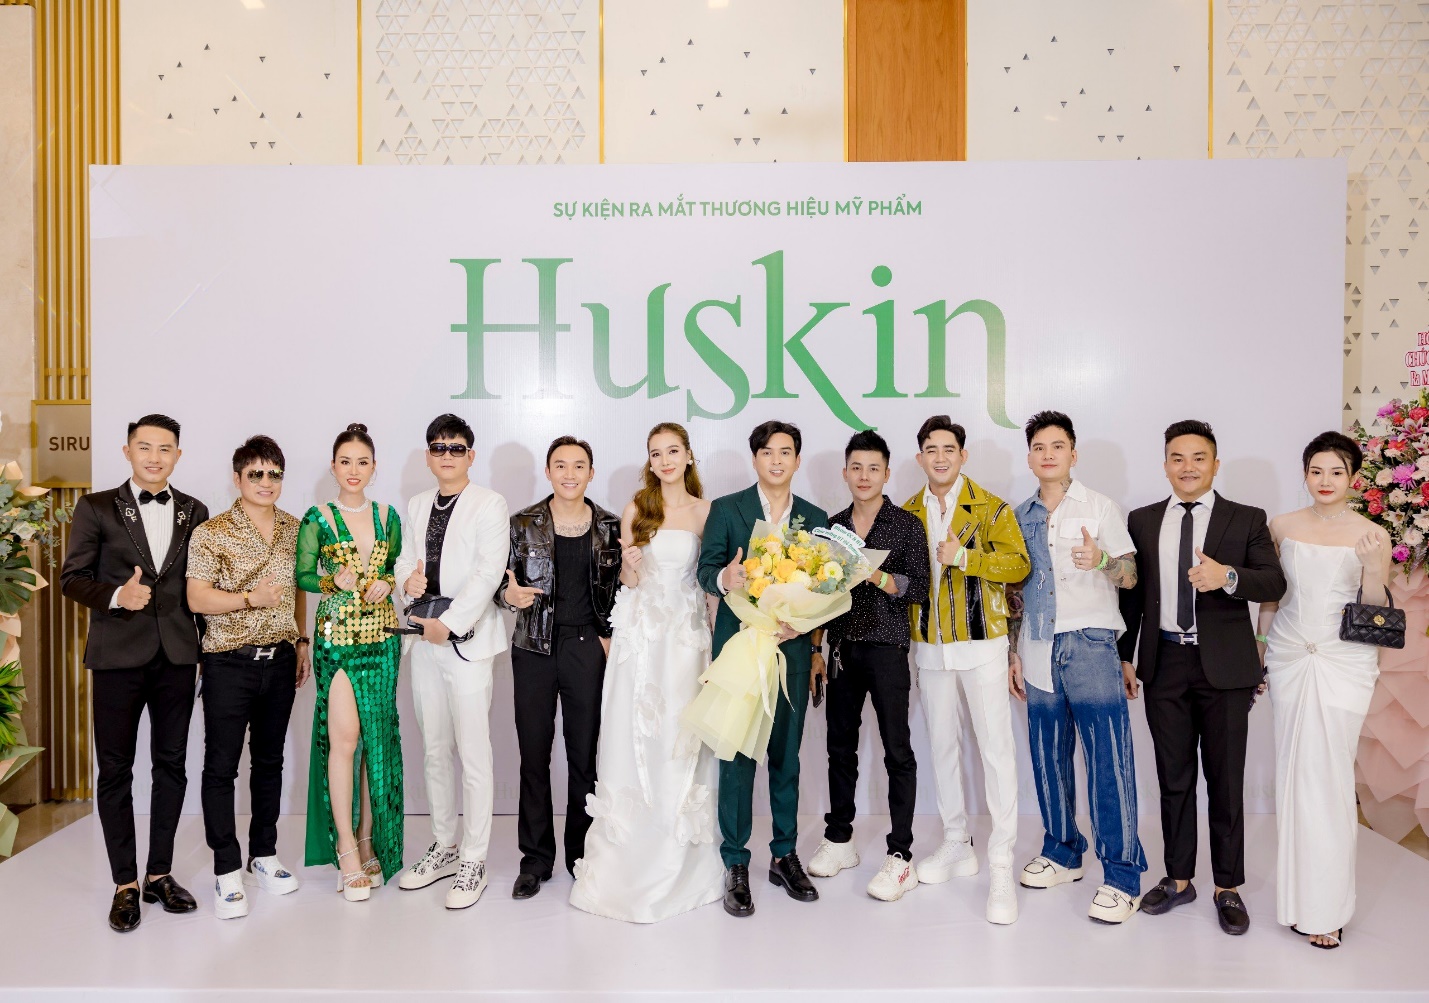 Hồ Quang Hiếu, Tuệ Như lên chức chủ tịch công ty mỹ phẩm Huskin - 1